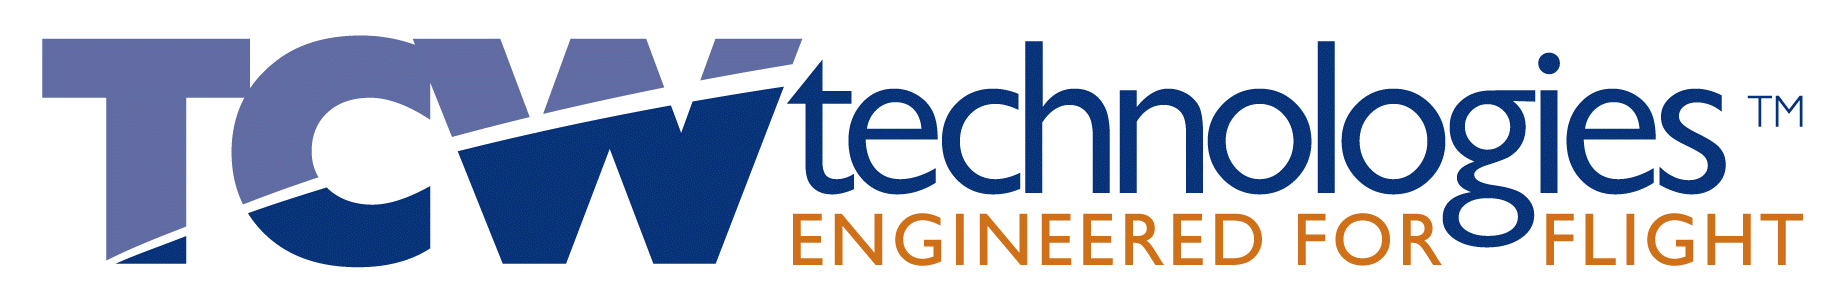 Aircraft Electronics Logo - Experimental Aircraft Electronics - TCW Technologies